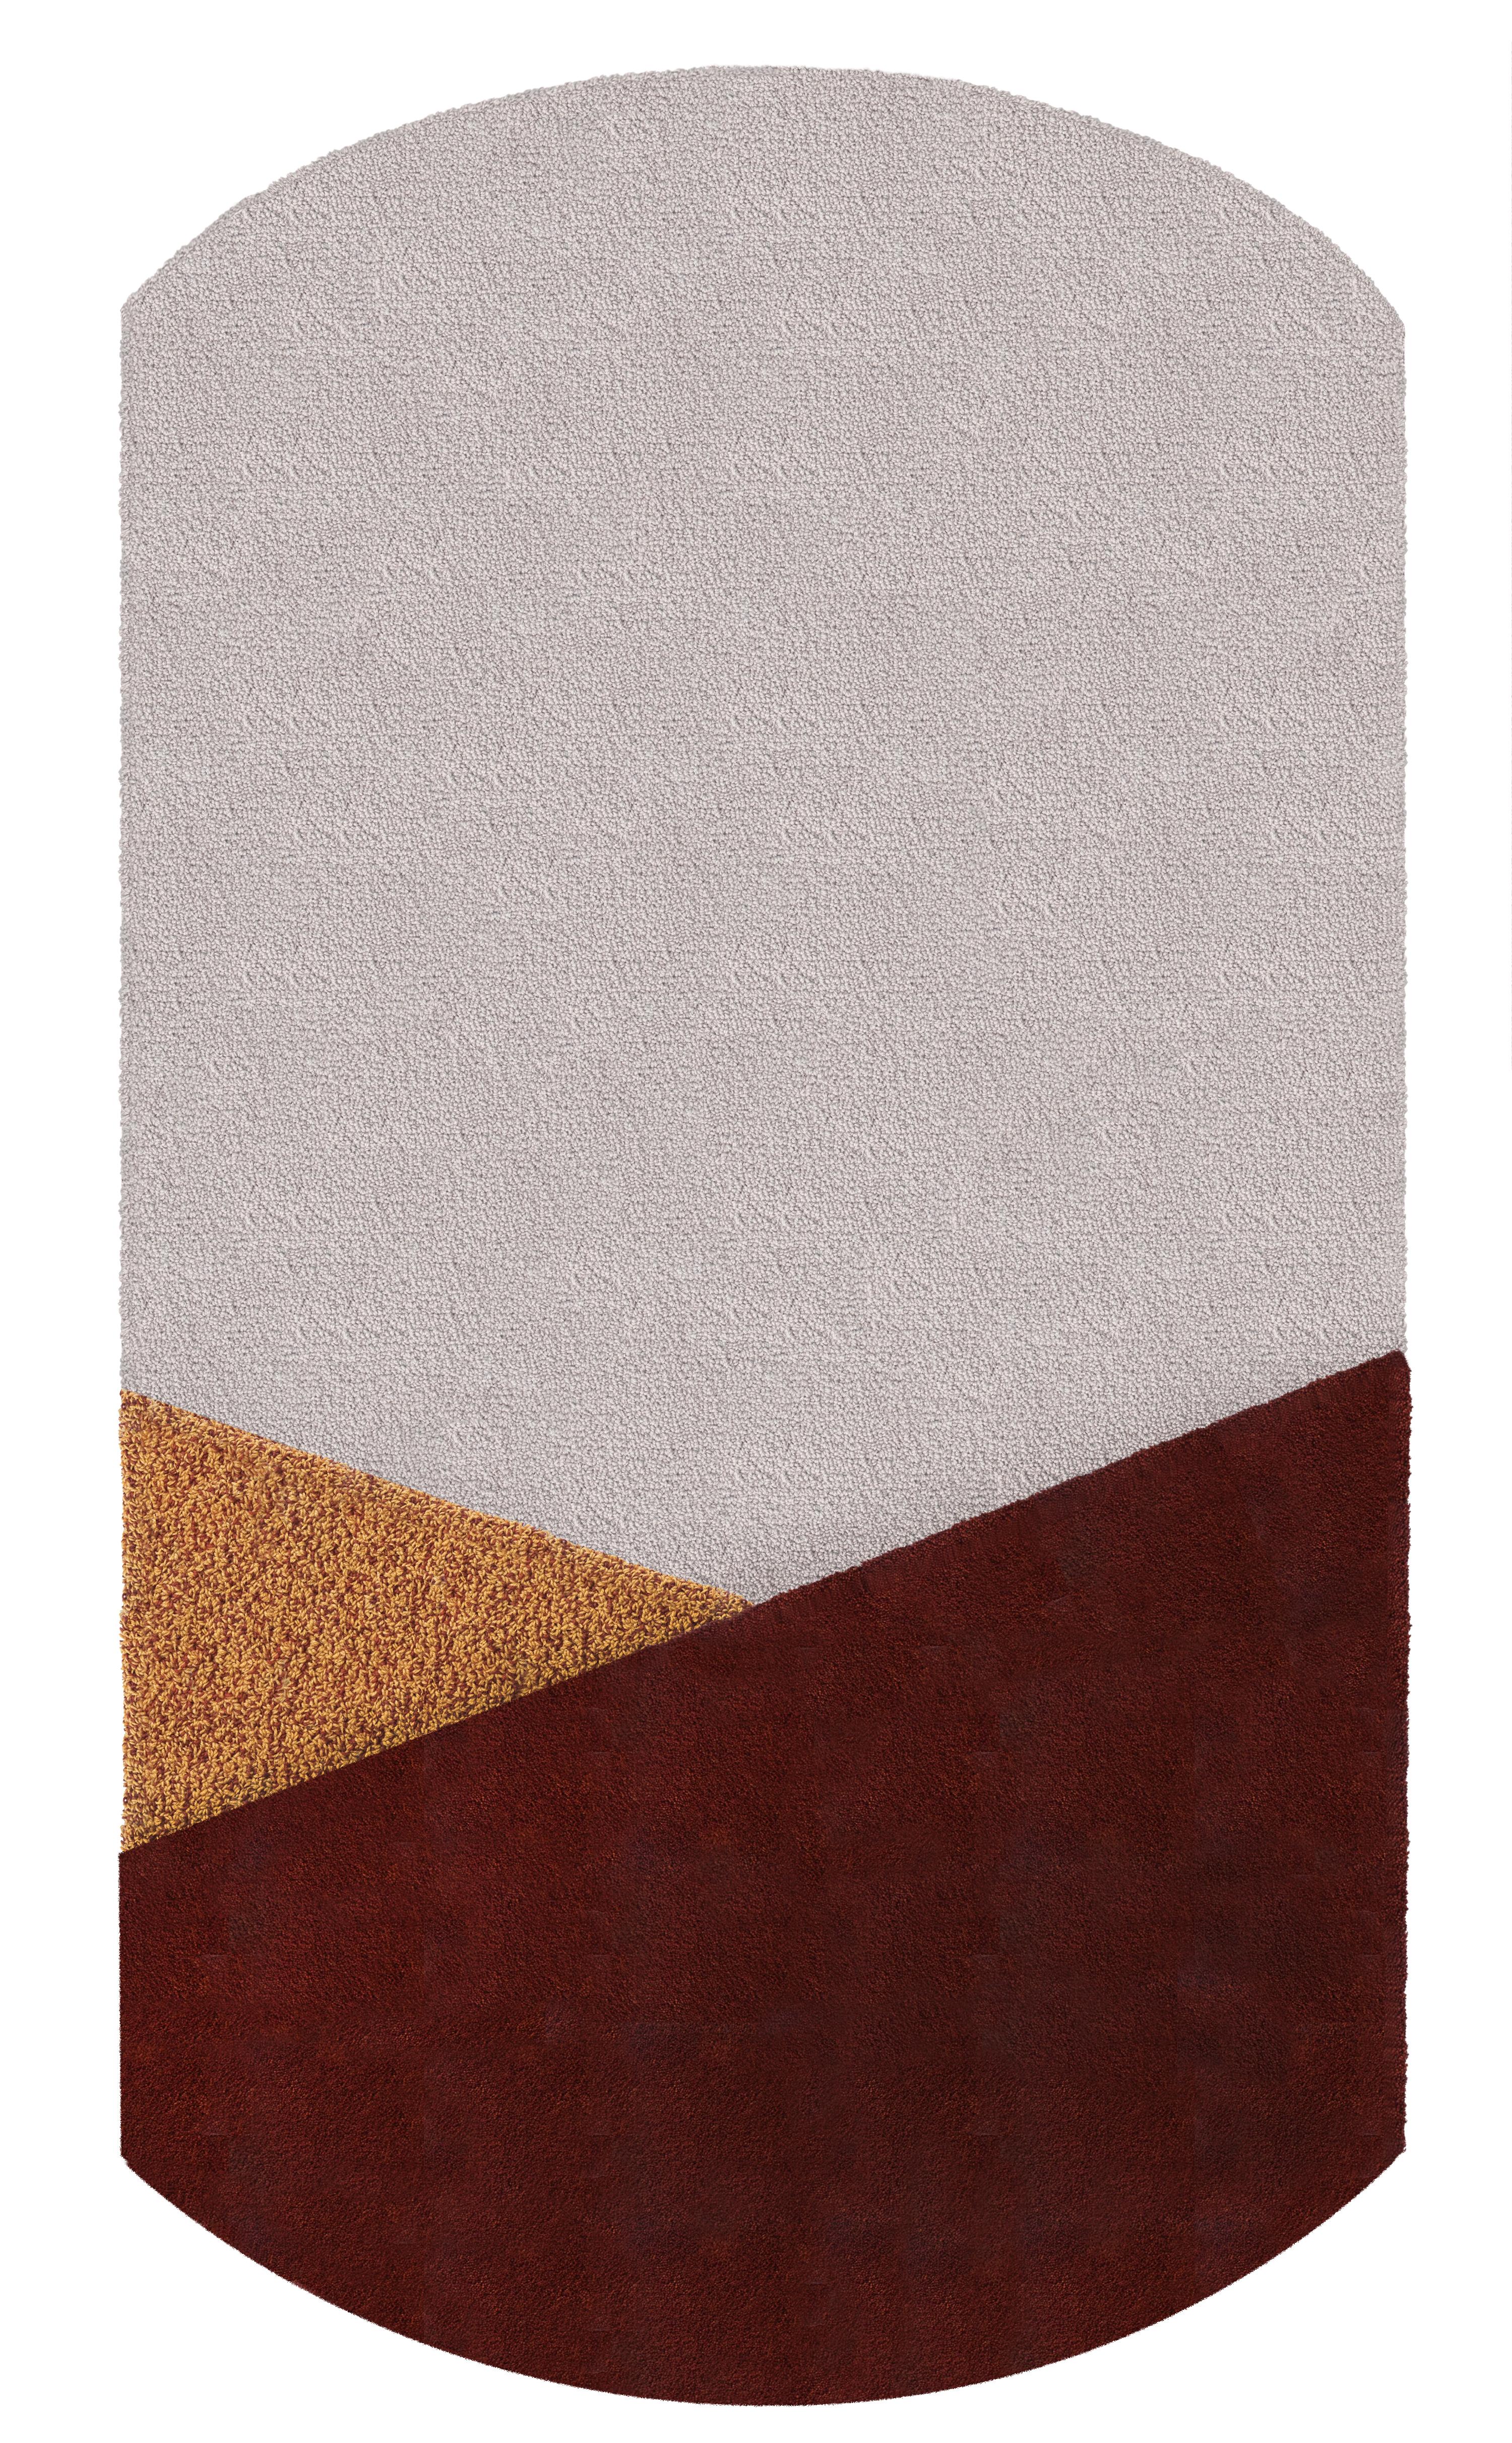 Oci-Teppich von Seraina Lareida
Abmessungen: 150 x 280 cm
MATERIALIEN: 100% neuseeländische Wolle bester Qualität

Verfügbare Größen: 70 x 130, 110 x 200, 150 x 280 cm

Die Teppiche von Oci werden aus neuseeländischer Wolle hergestellt, wobei